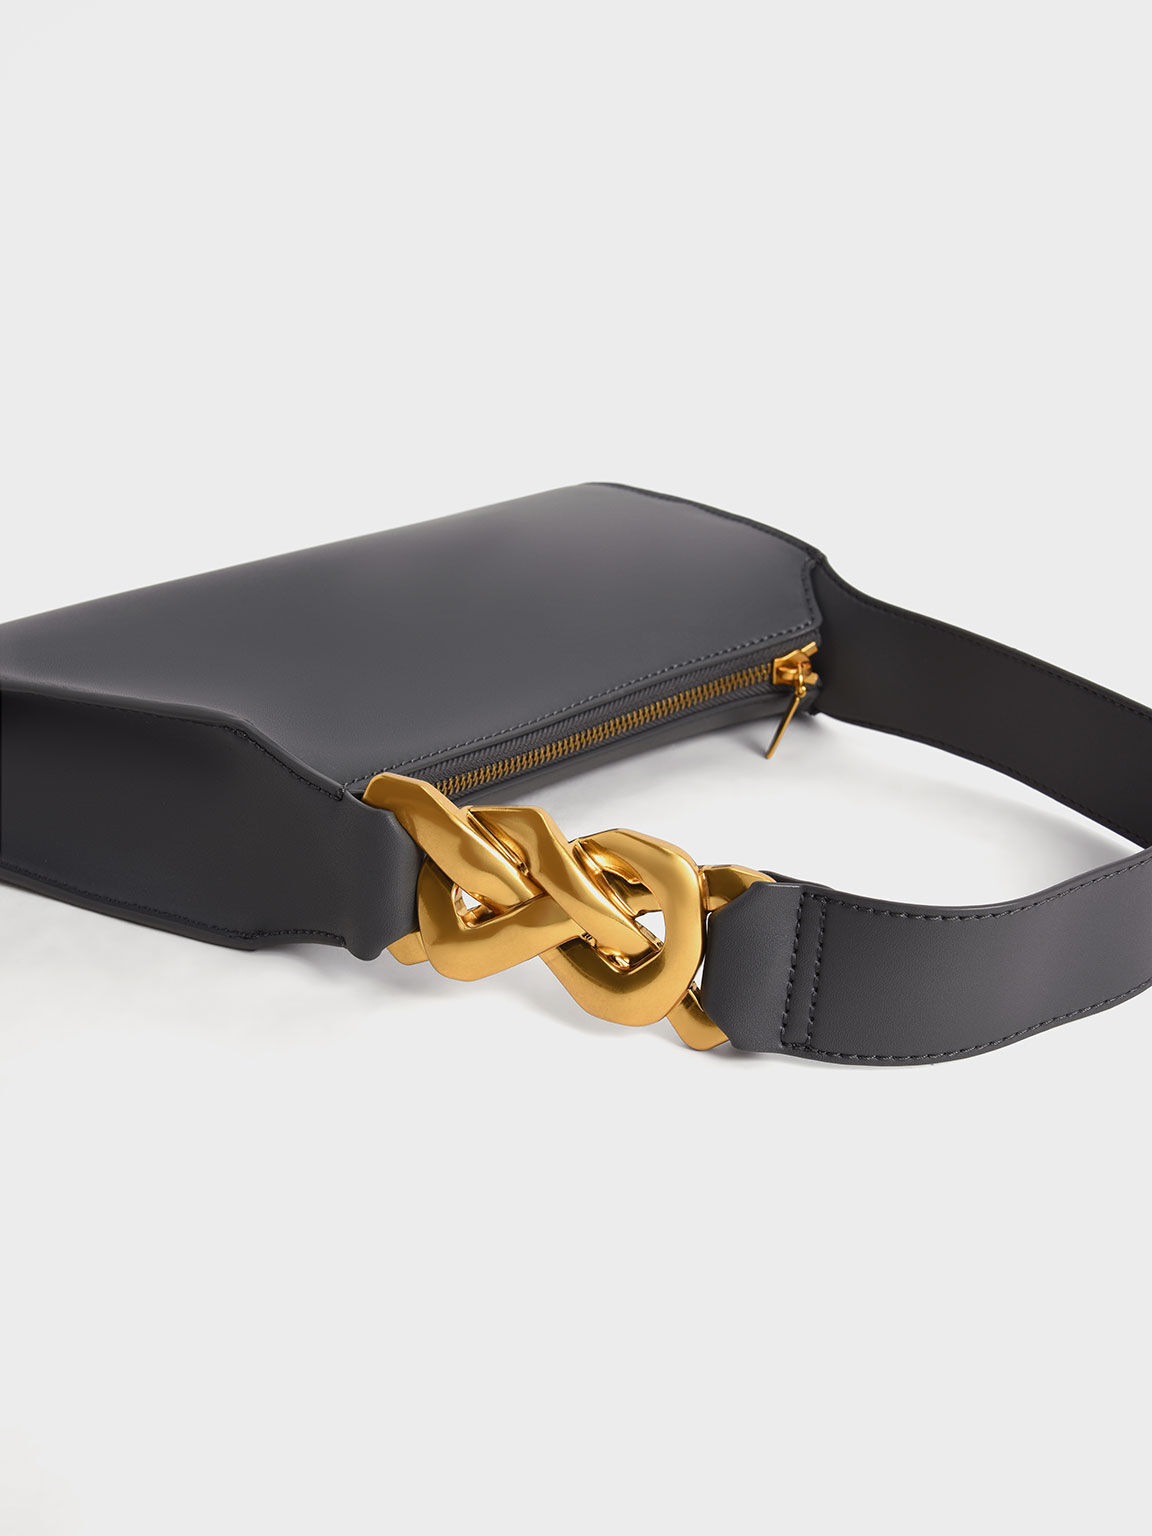 Chain-Link Strap Shoulder Bag, Black, hi-res